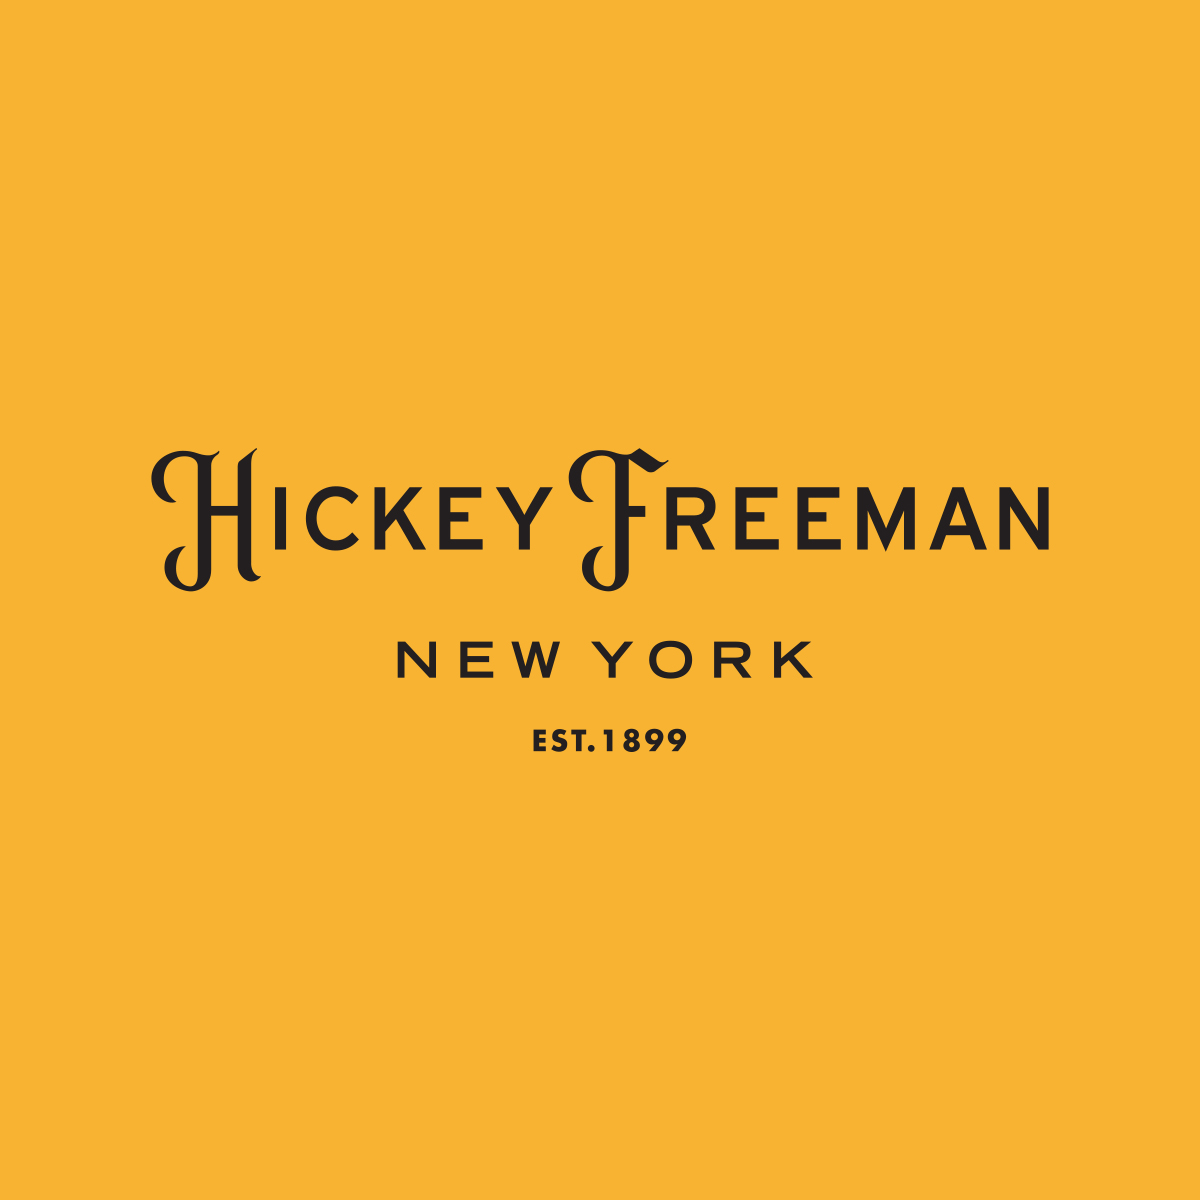 HickeyFreeman-NY-1899_square.jpg